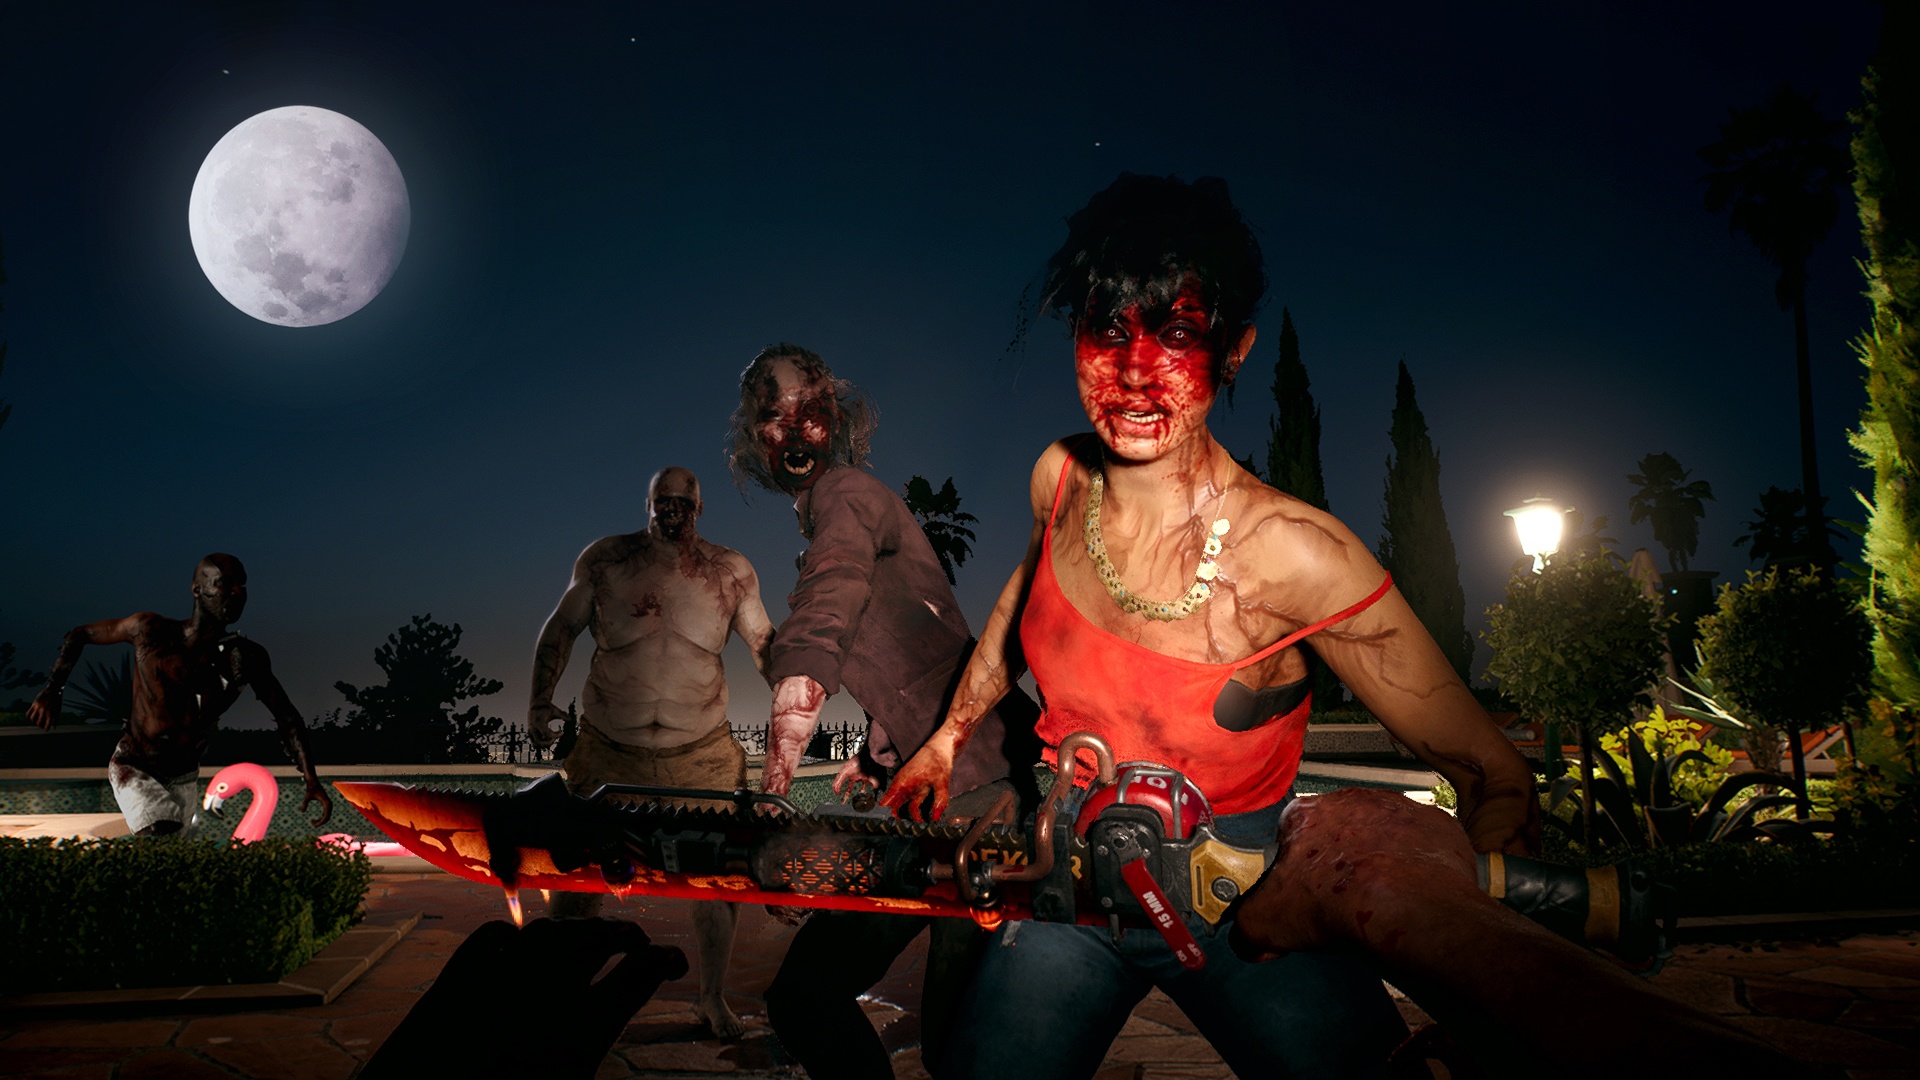 (Se vi dimenate selvaggiamente, in Dead Island 2 finirete rapidamente in pasto agli zombie. Il sistema di combattimento è semplice, ma allo stesso tempo impegnativo)